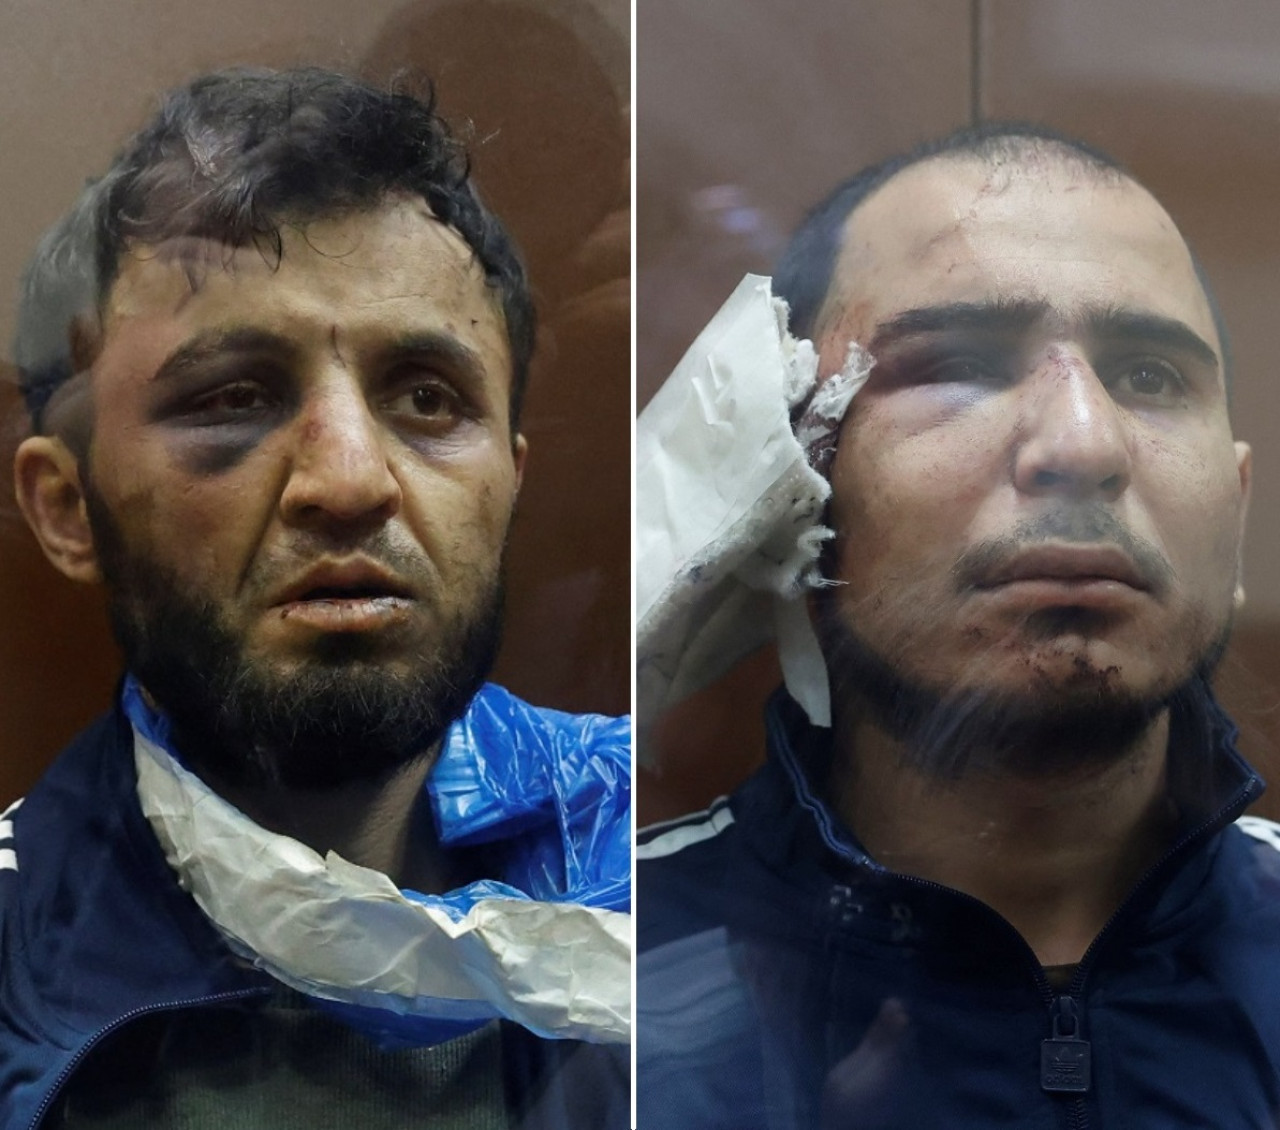 Dalerdzhon Mirzoev (izq) y Saidakrami Rachabalizoda (der), sospechosos del atentado en Moscú. Fotos: Reuters